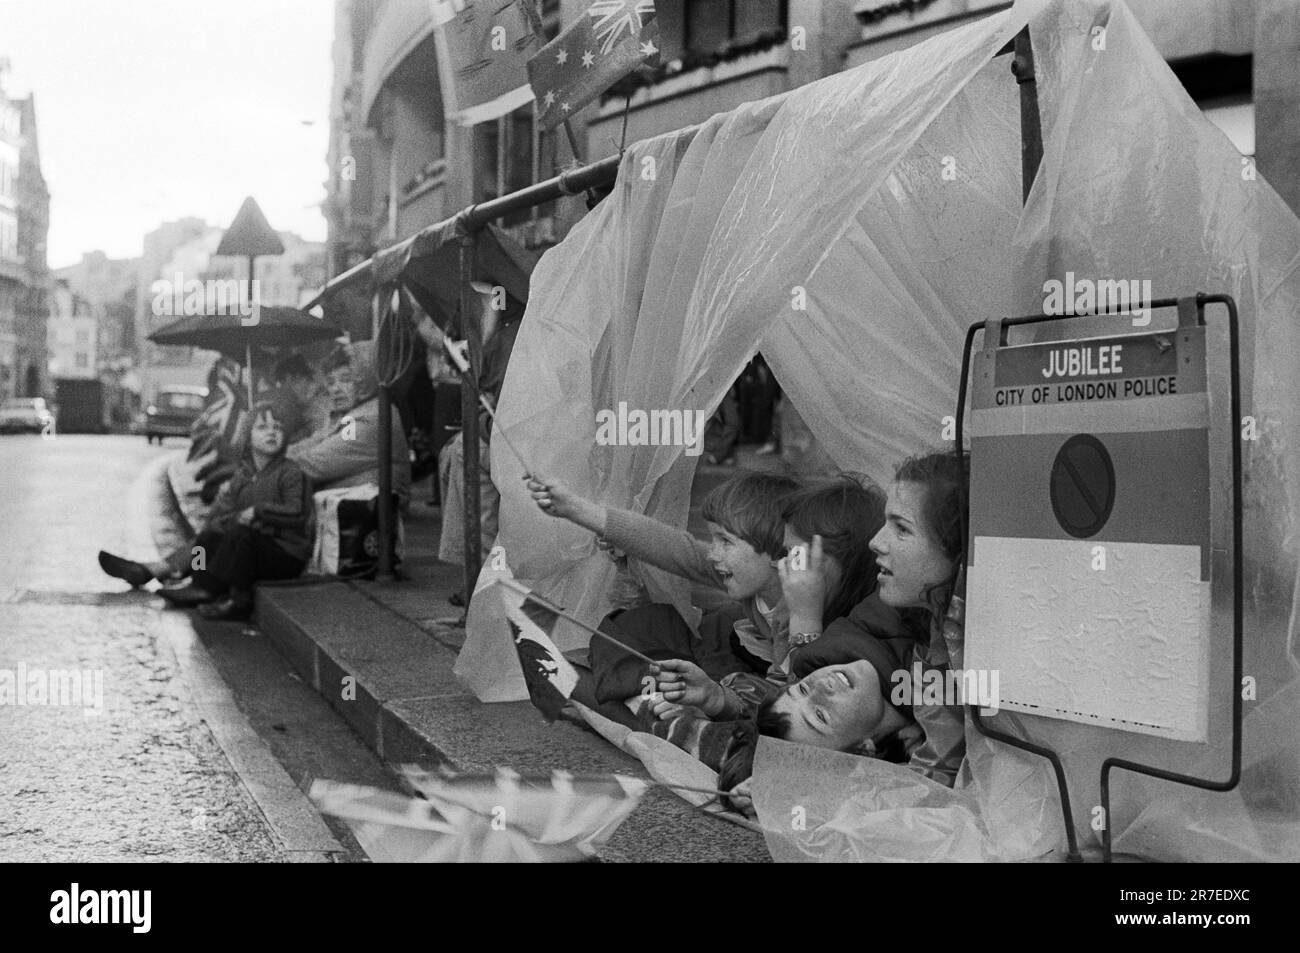 Regina Elisabetta II Silver Jubilee 1977. Bene i wishers aspettano tutta la notte in pioggia spesso versante riparandosi sotto gli ombrelli e le tele di plastica per la processione reale di giubileo d'argento la mattina seguente. Londra, Inghilterra circa 1977 giugno. Foto Stock